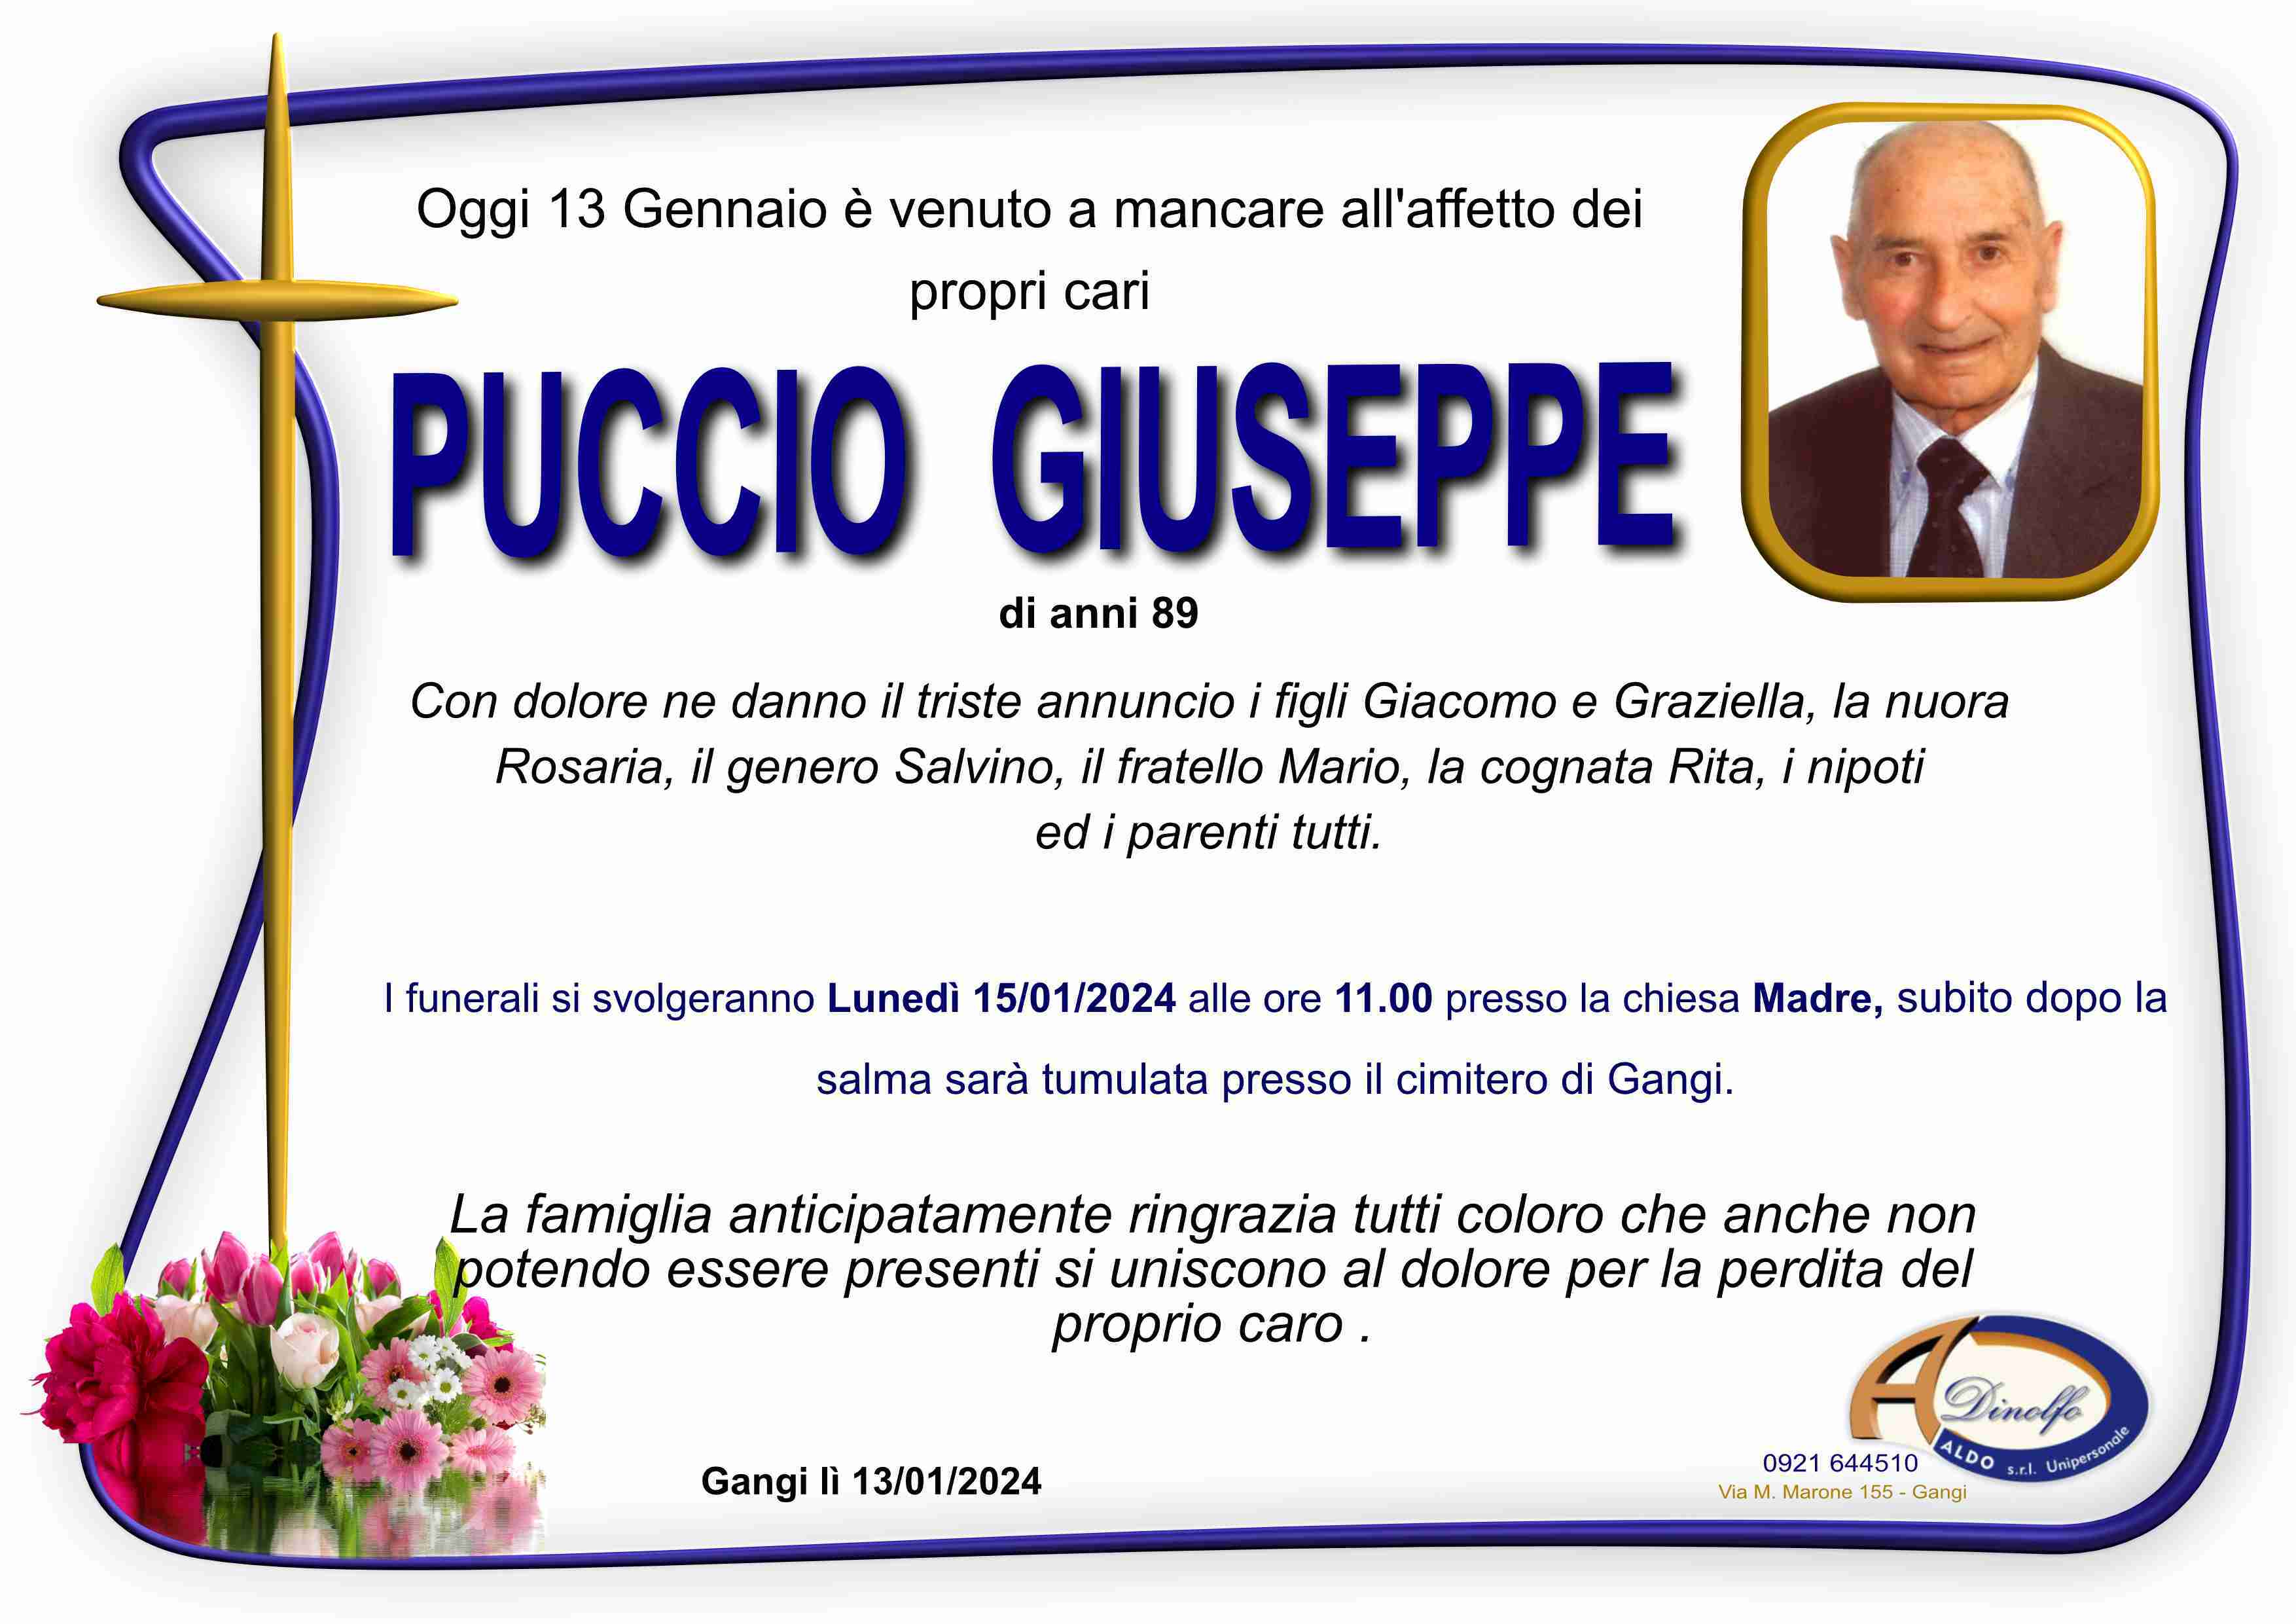 Giuseppe Puccio